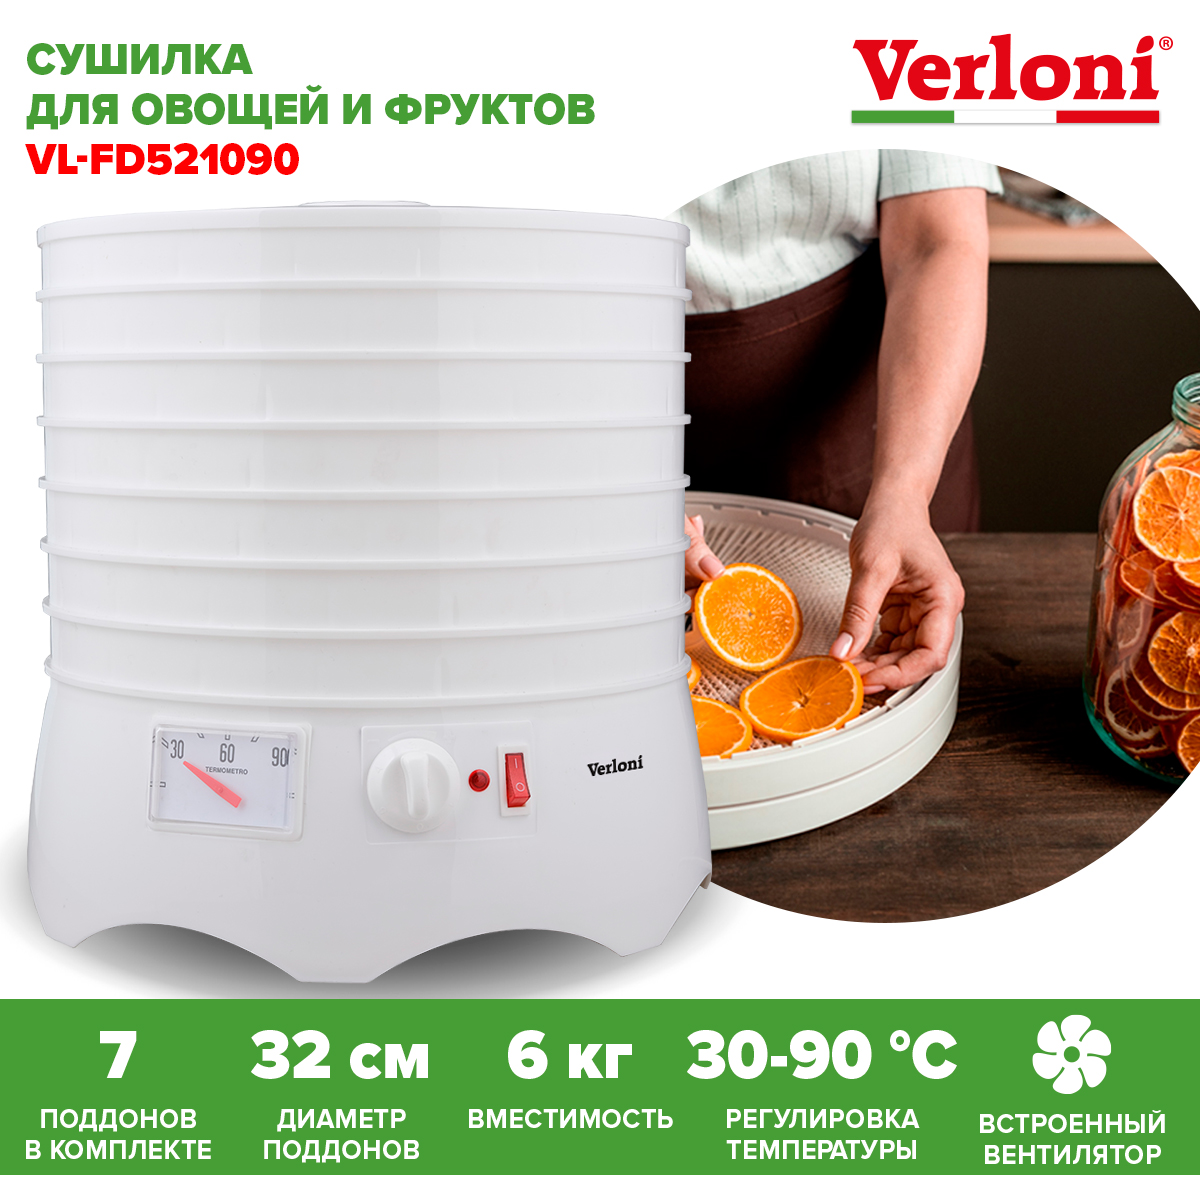 Сушилка для овощей и фруктов Verloni VL-FD521090 белая